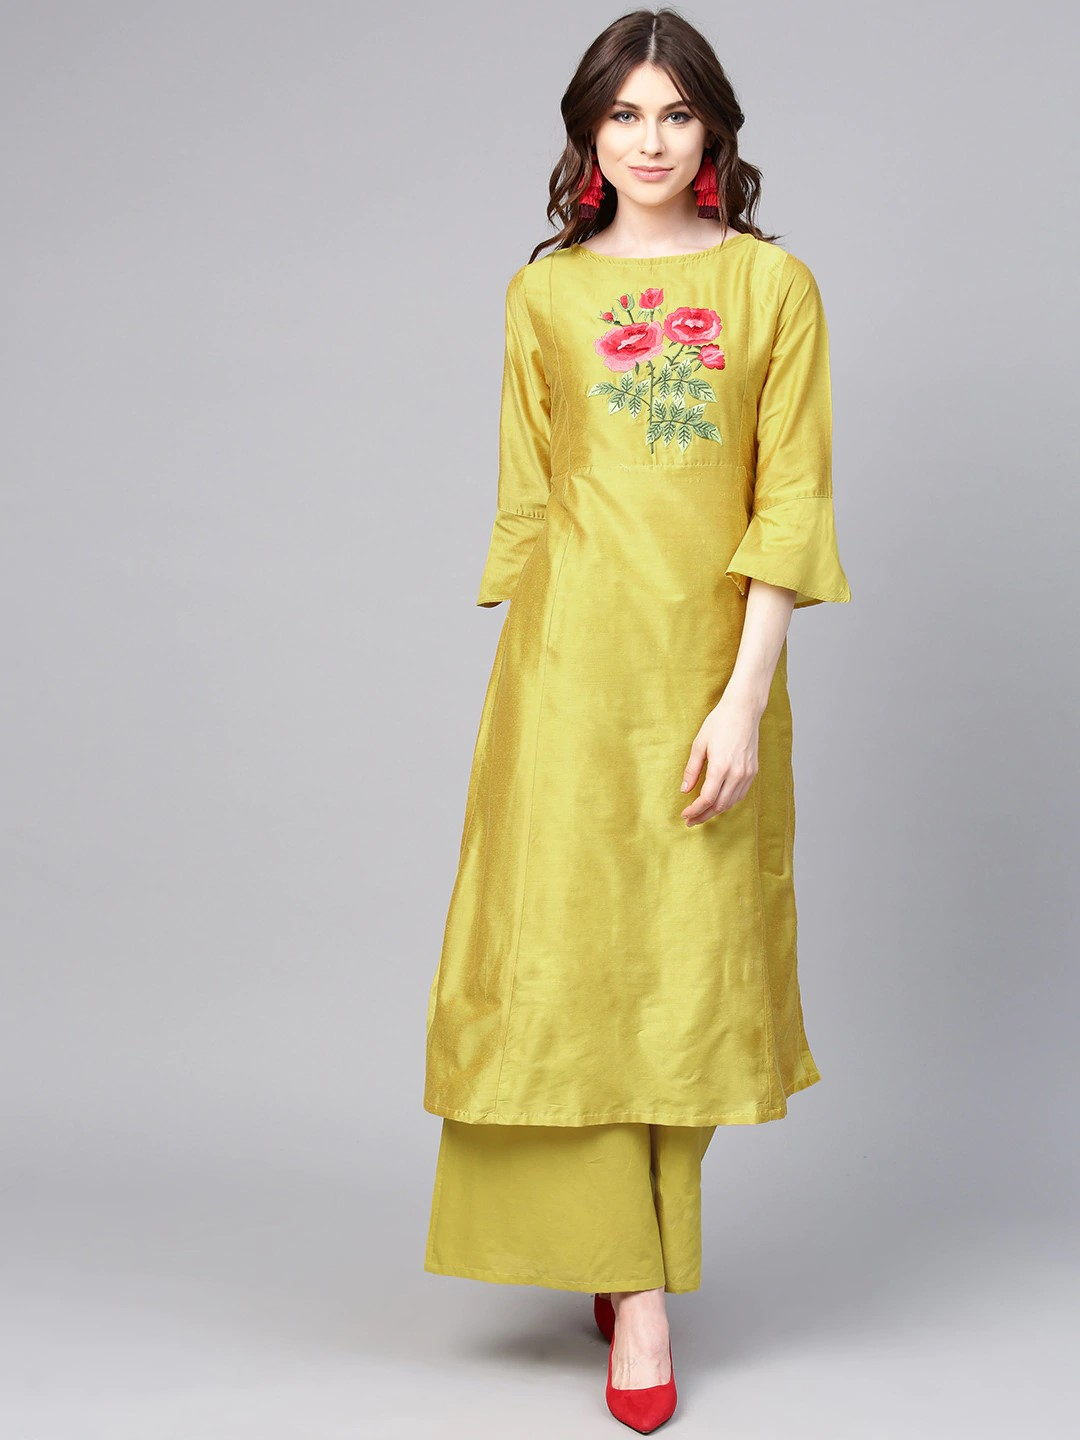 Golden plain dupion silk kurtas-and-kurtis - Shree The Indian Avatar -  3089685